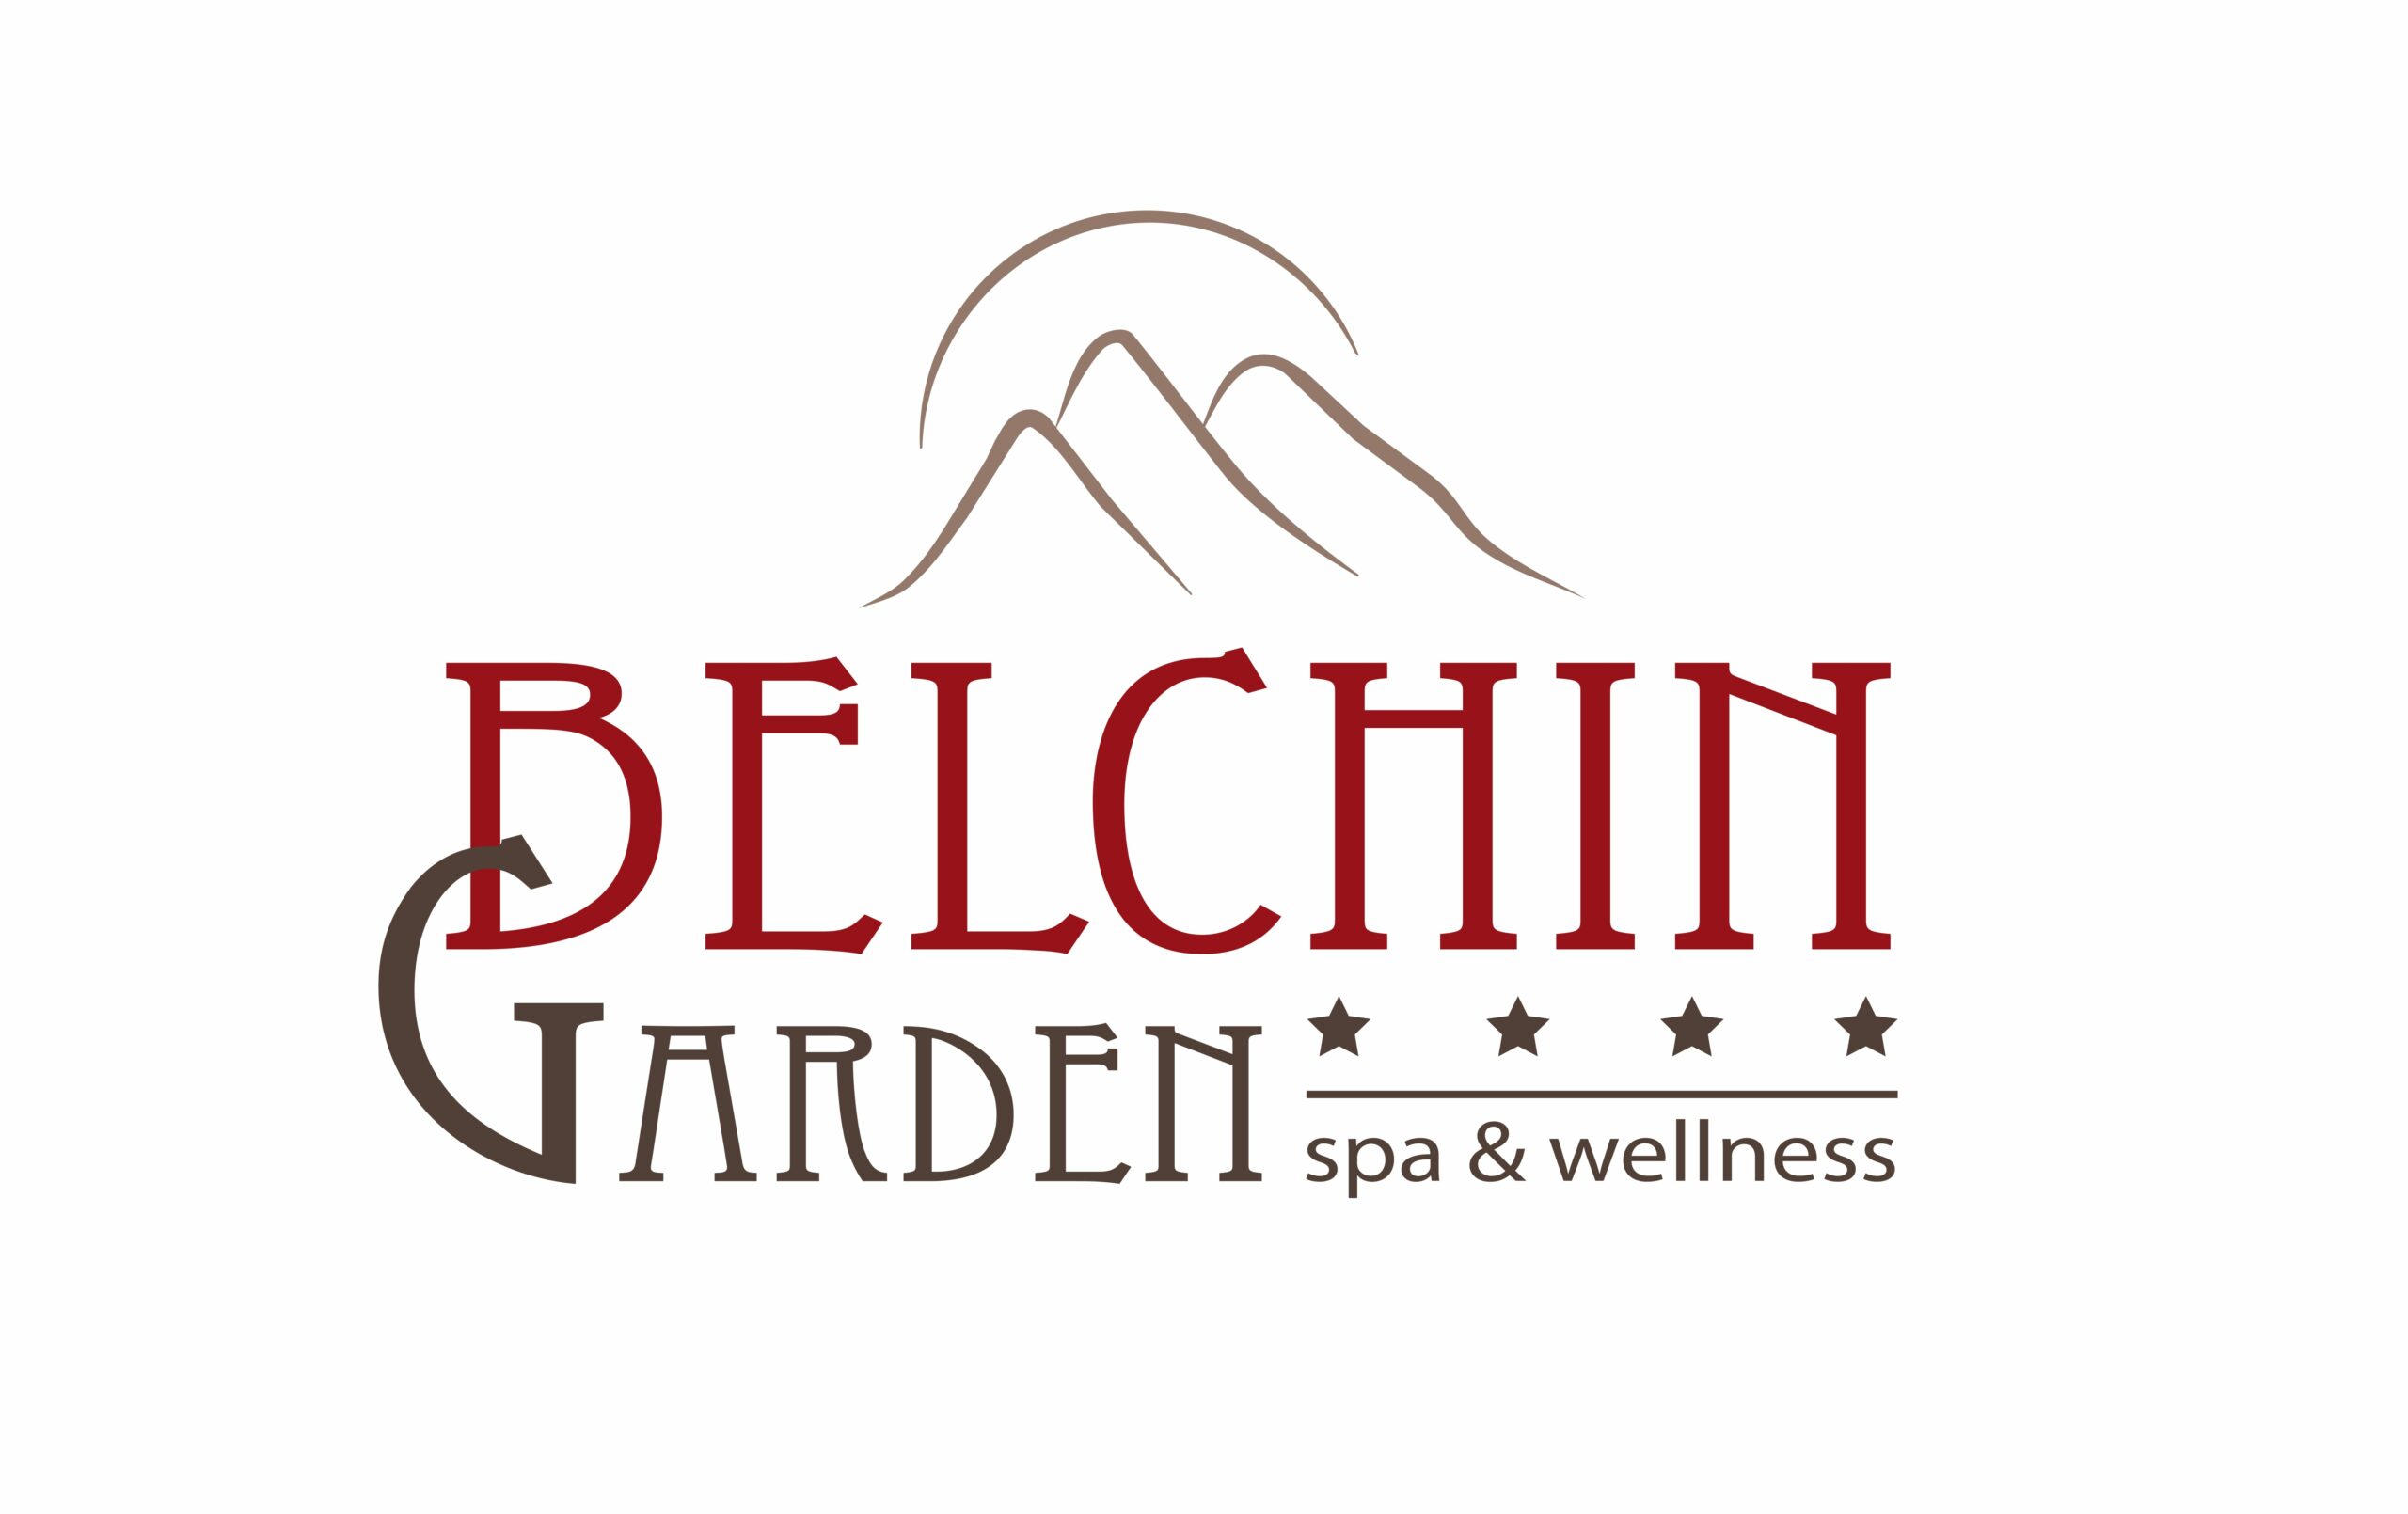 Belchin Garden Spa & Wellness